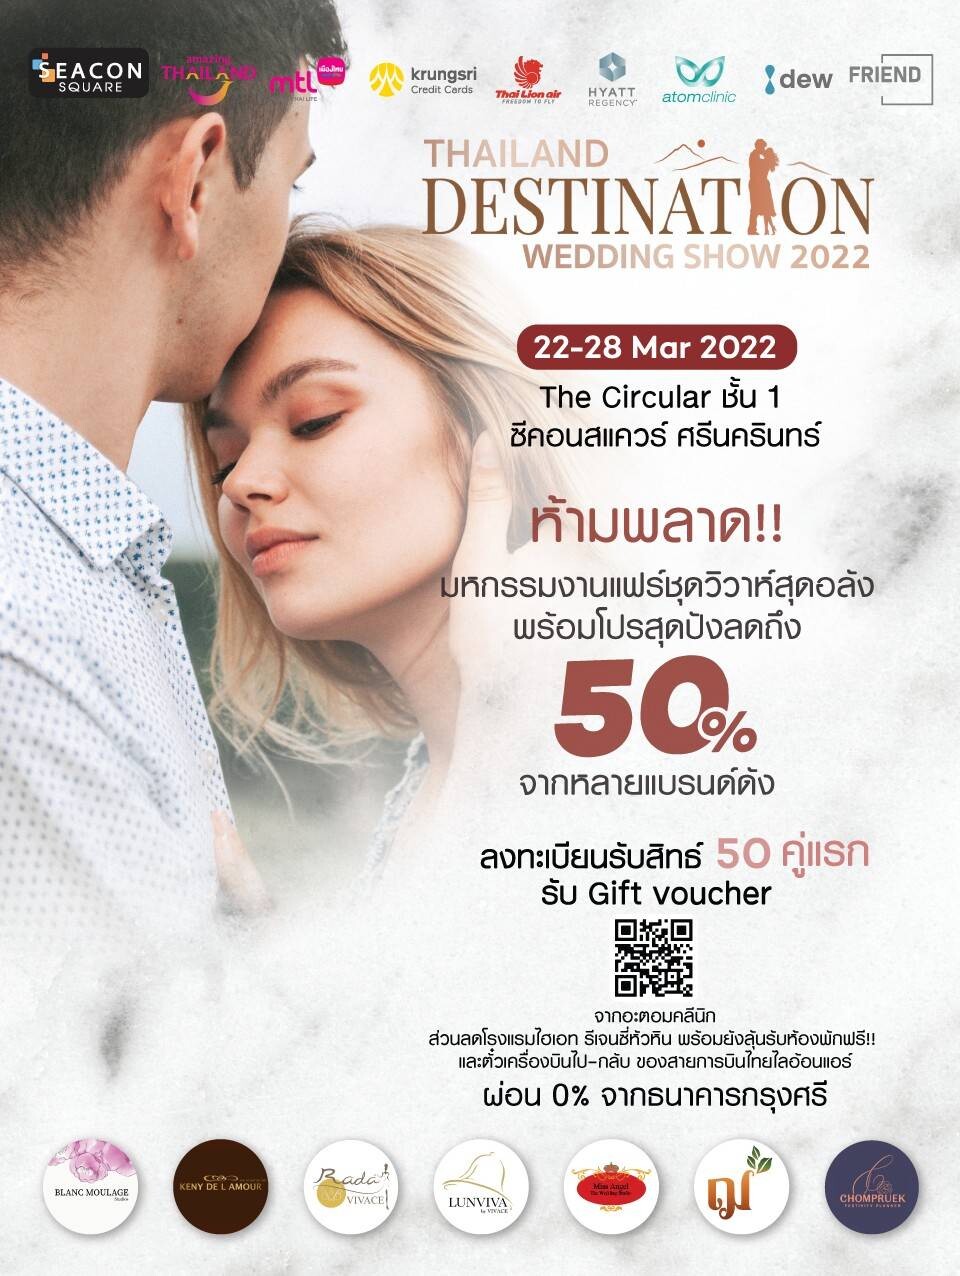 คุ้มกว่างานไหนๆ!! กับ Thailand Destination Wedding Show 2022 มหกรรมงานแฟร์ชุดวิวาห์สุดอลังพร้อมโปรสุดปังส่วนลดสูงสุดกว่า 50%